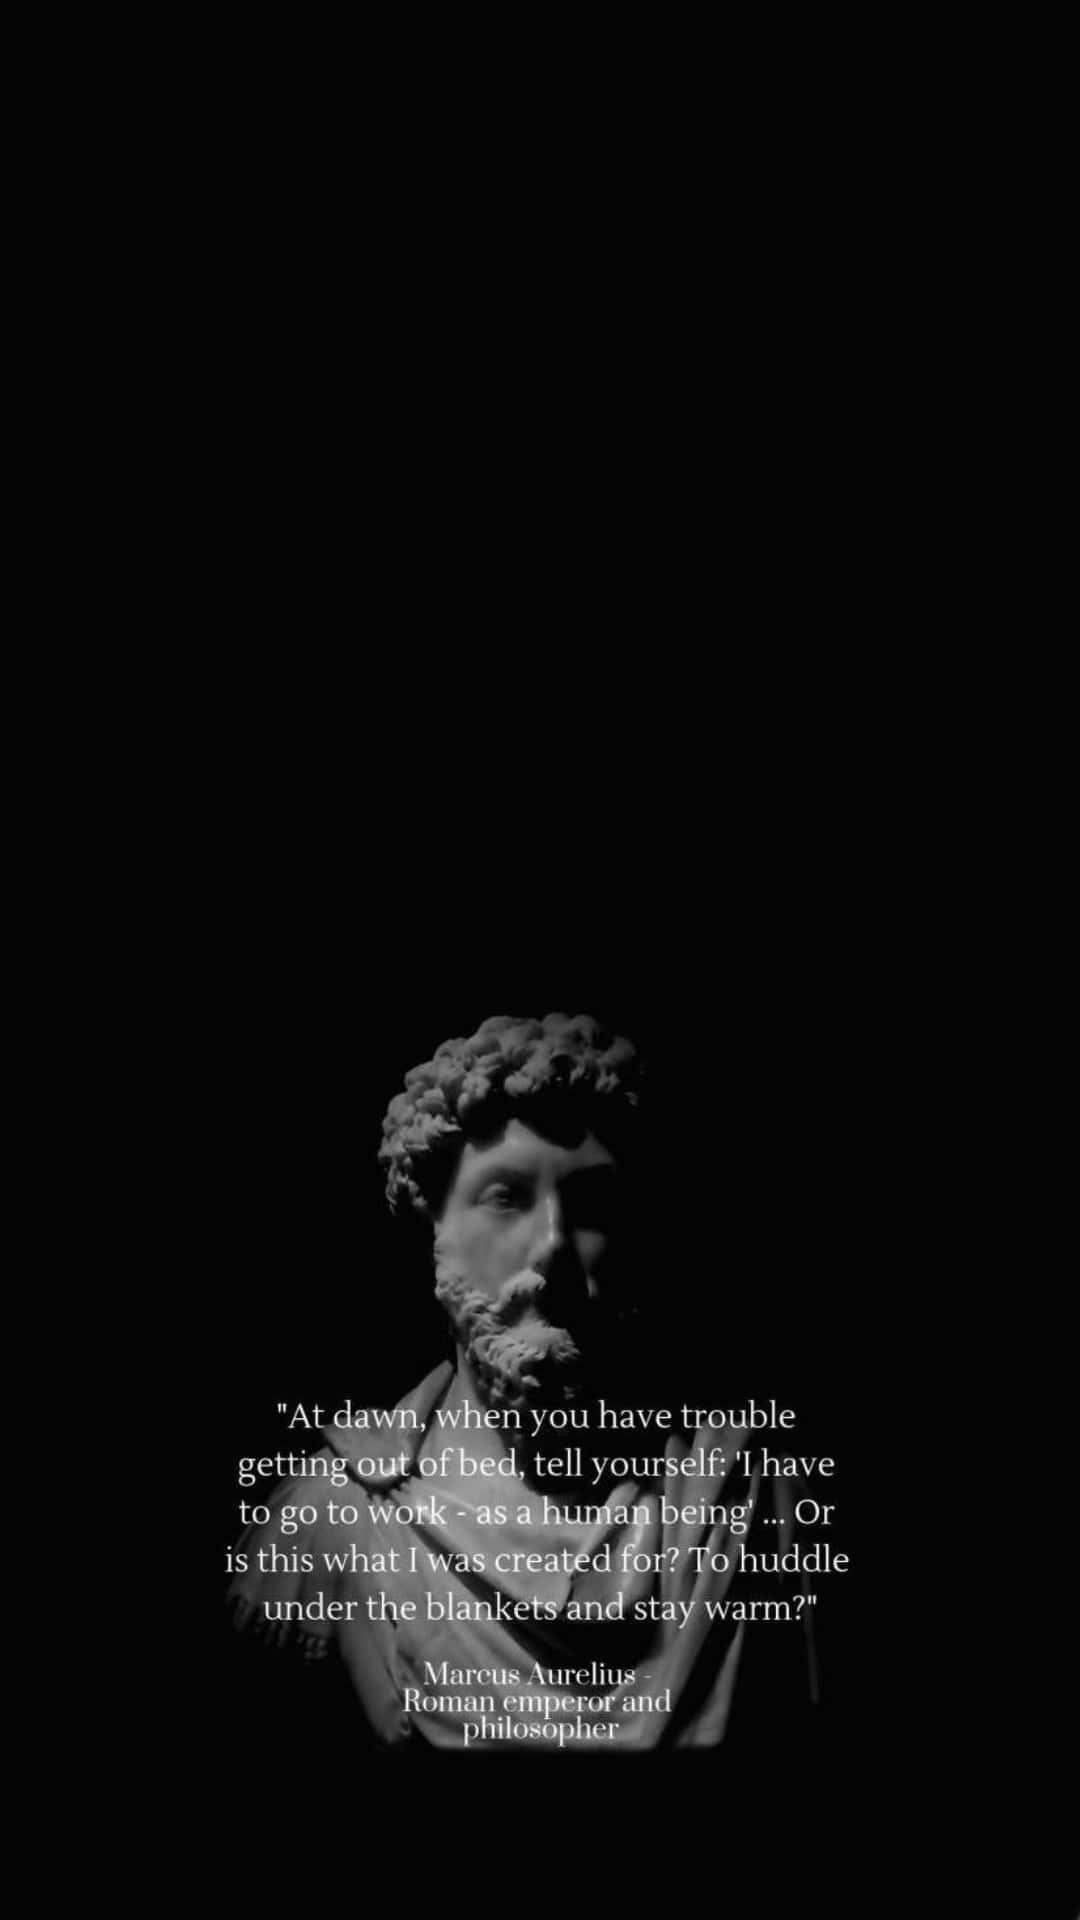 Marcus Aurelius Quote Motivation Wallpaper